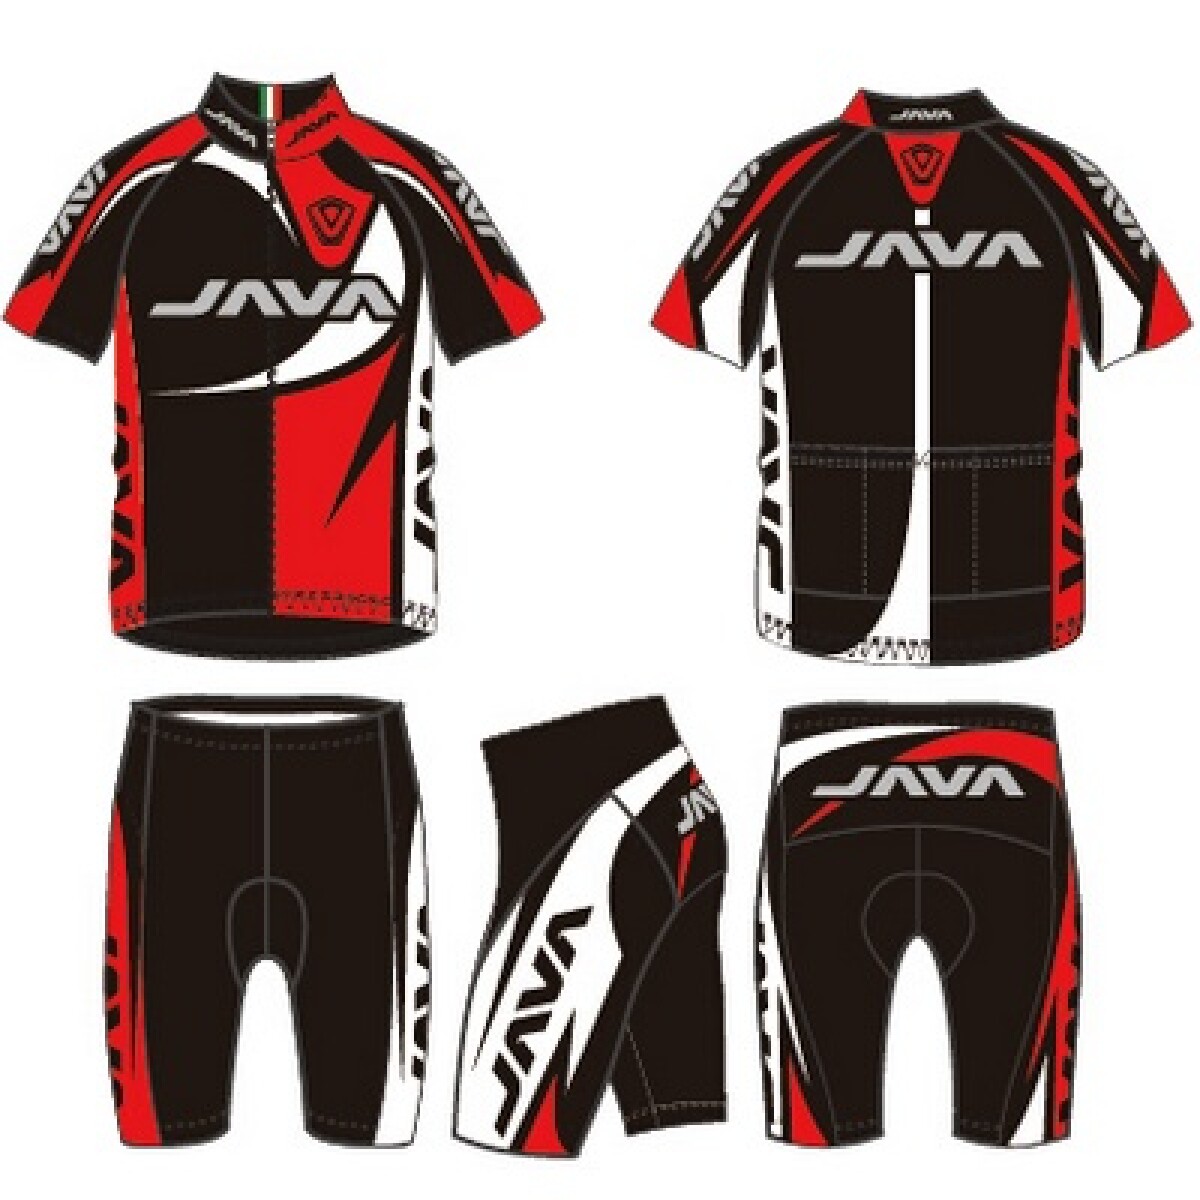 Java - Malla de Ciclista -- YA-011D - Color: Negro/rojo/blanco\nTalle: S - 001 